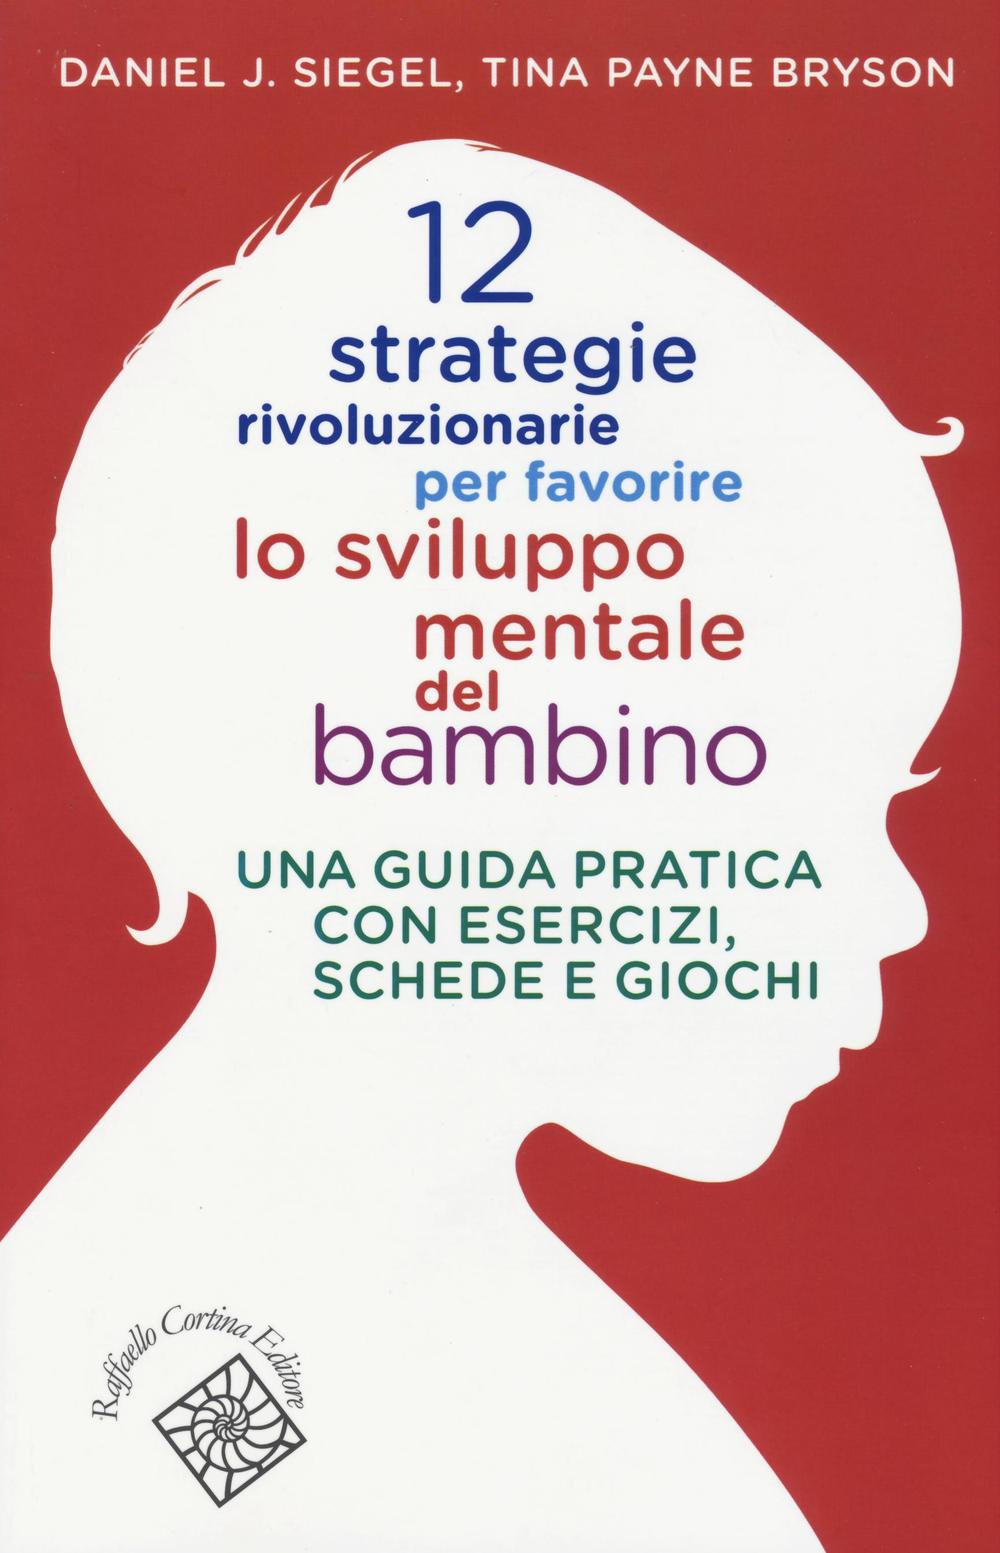 Knjiga 12 strategie rivoluzionarie per favorire lo sviluppo mentale del bambino. Una guida pratica con esercizi, schede e giochi Tina Payne Bryson